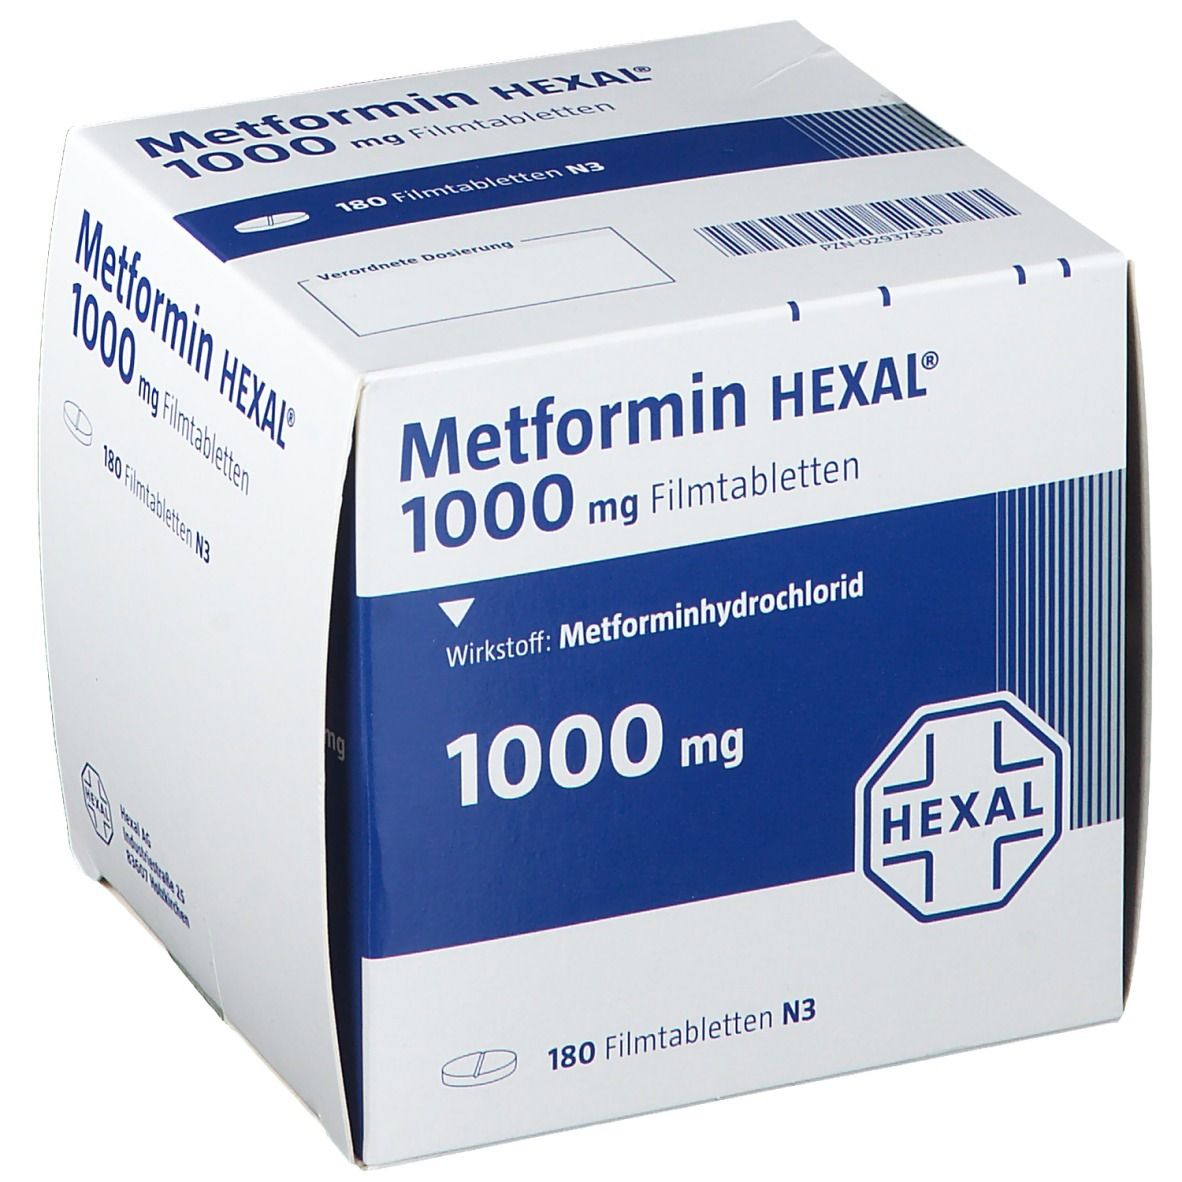 Metformin HEXAL ® 1000 mg 180 St - shop-apotheke.com